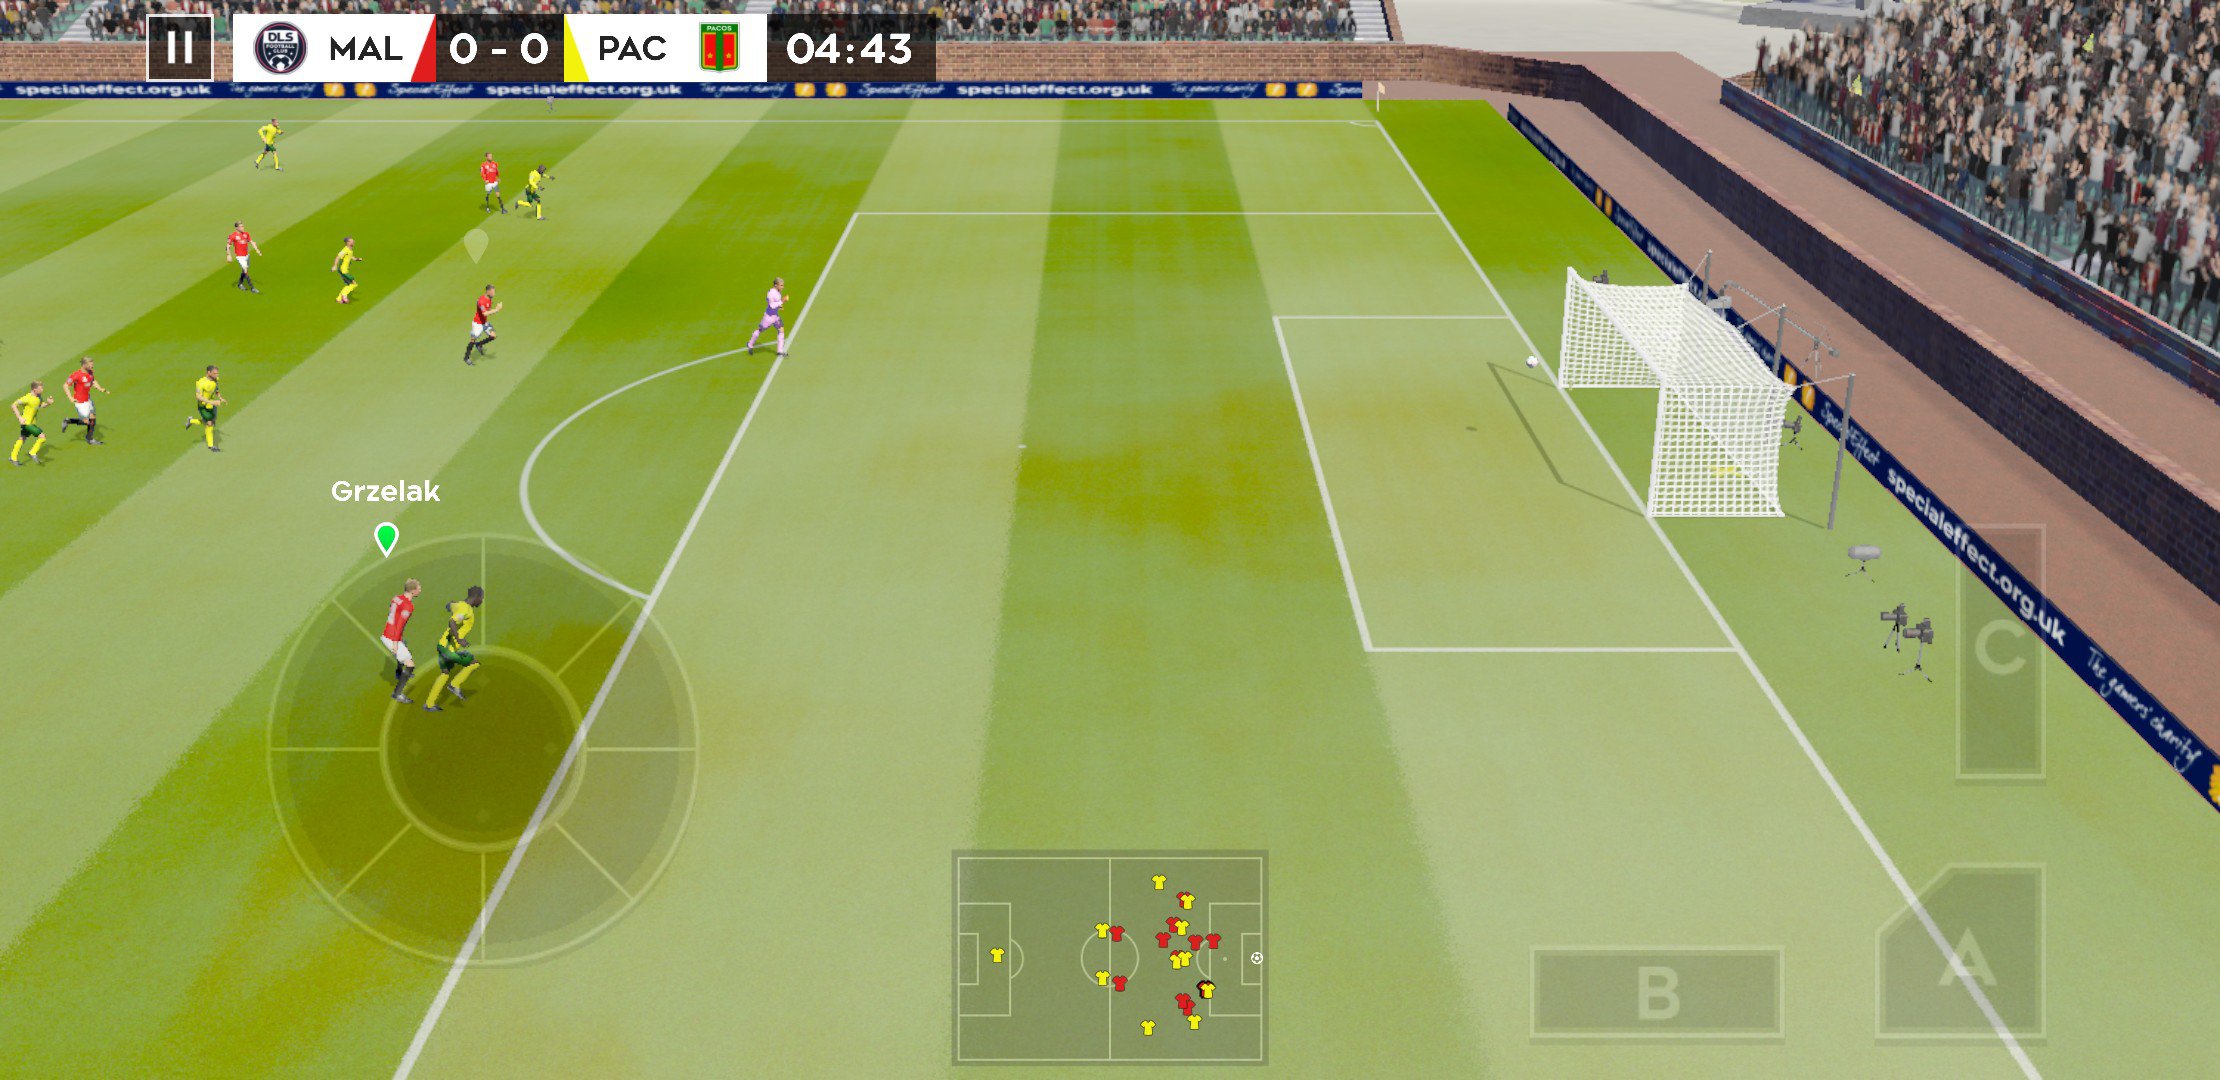 Download game dream league soccer 2 mod apk pc